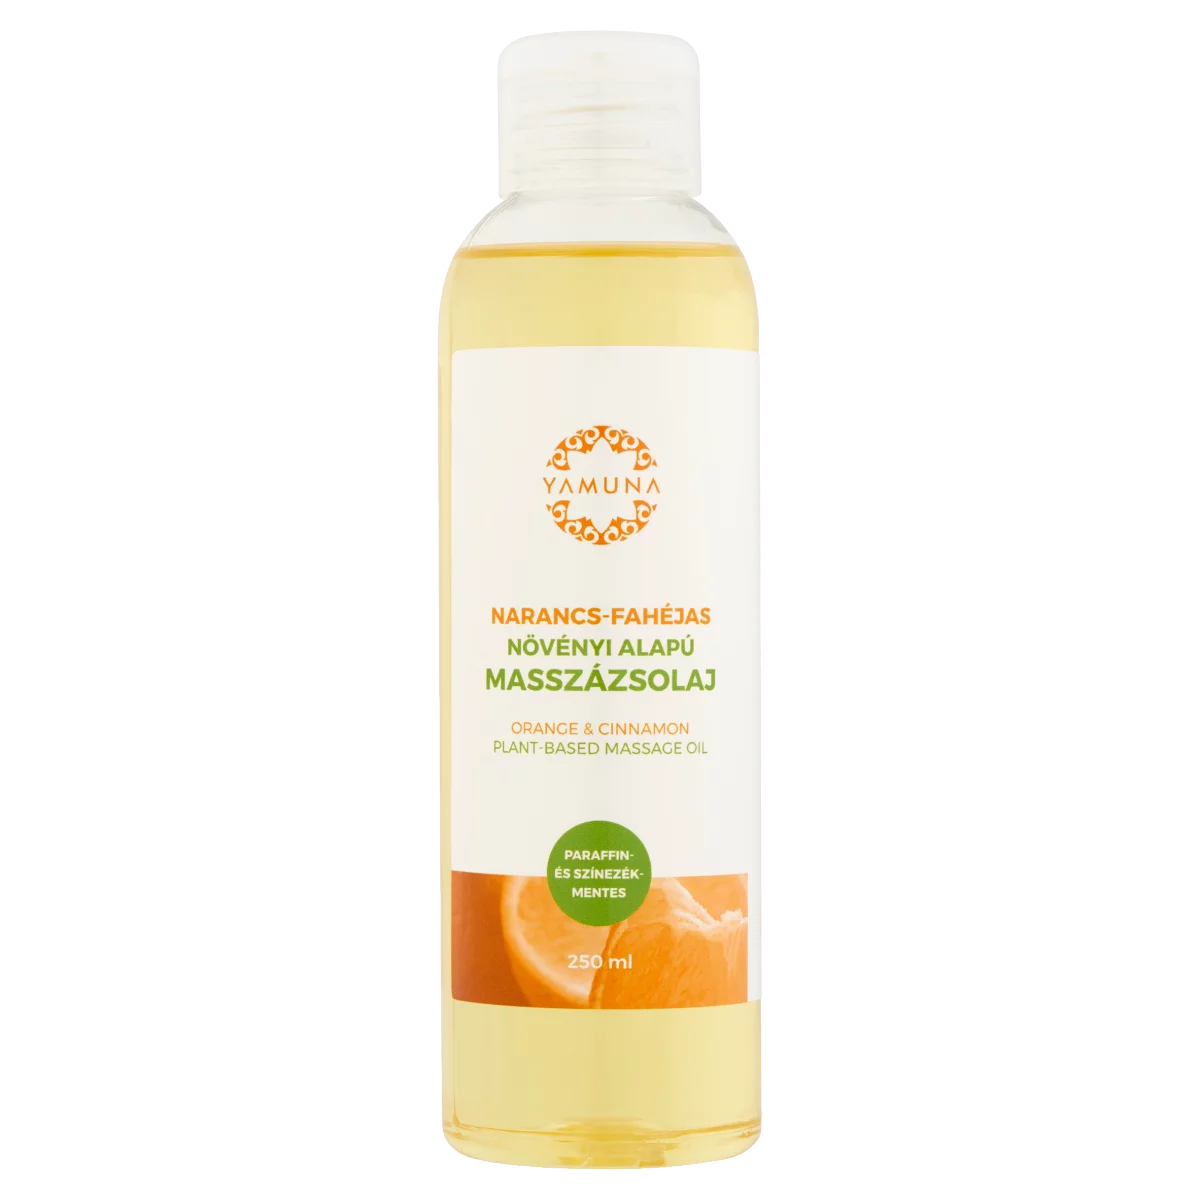 Yamuna narancs-fahéjas növényi alapú masszázsolaj 250 ml